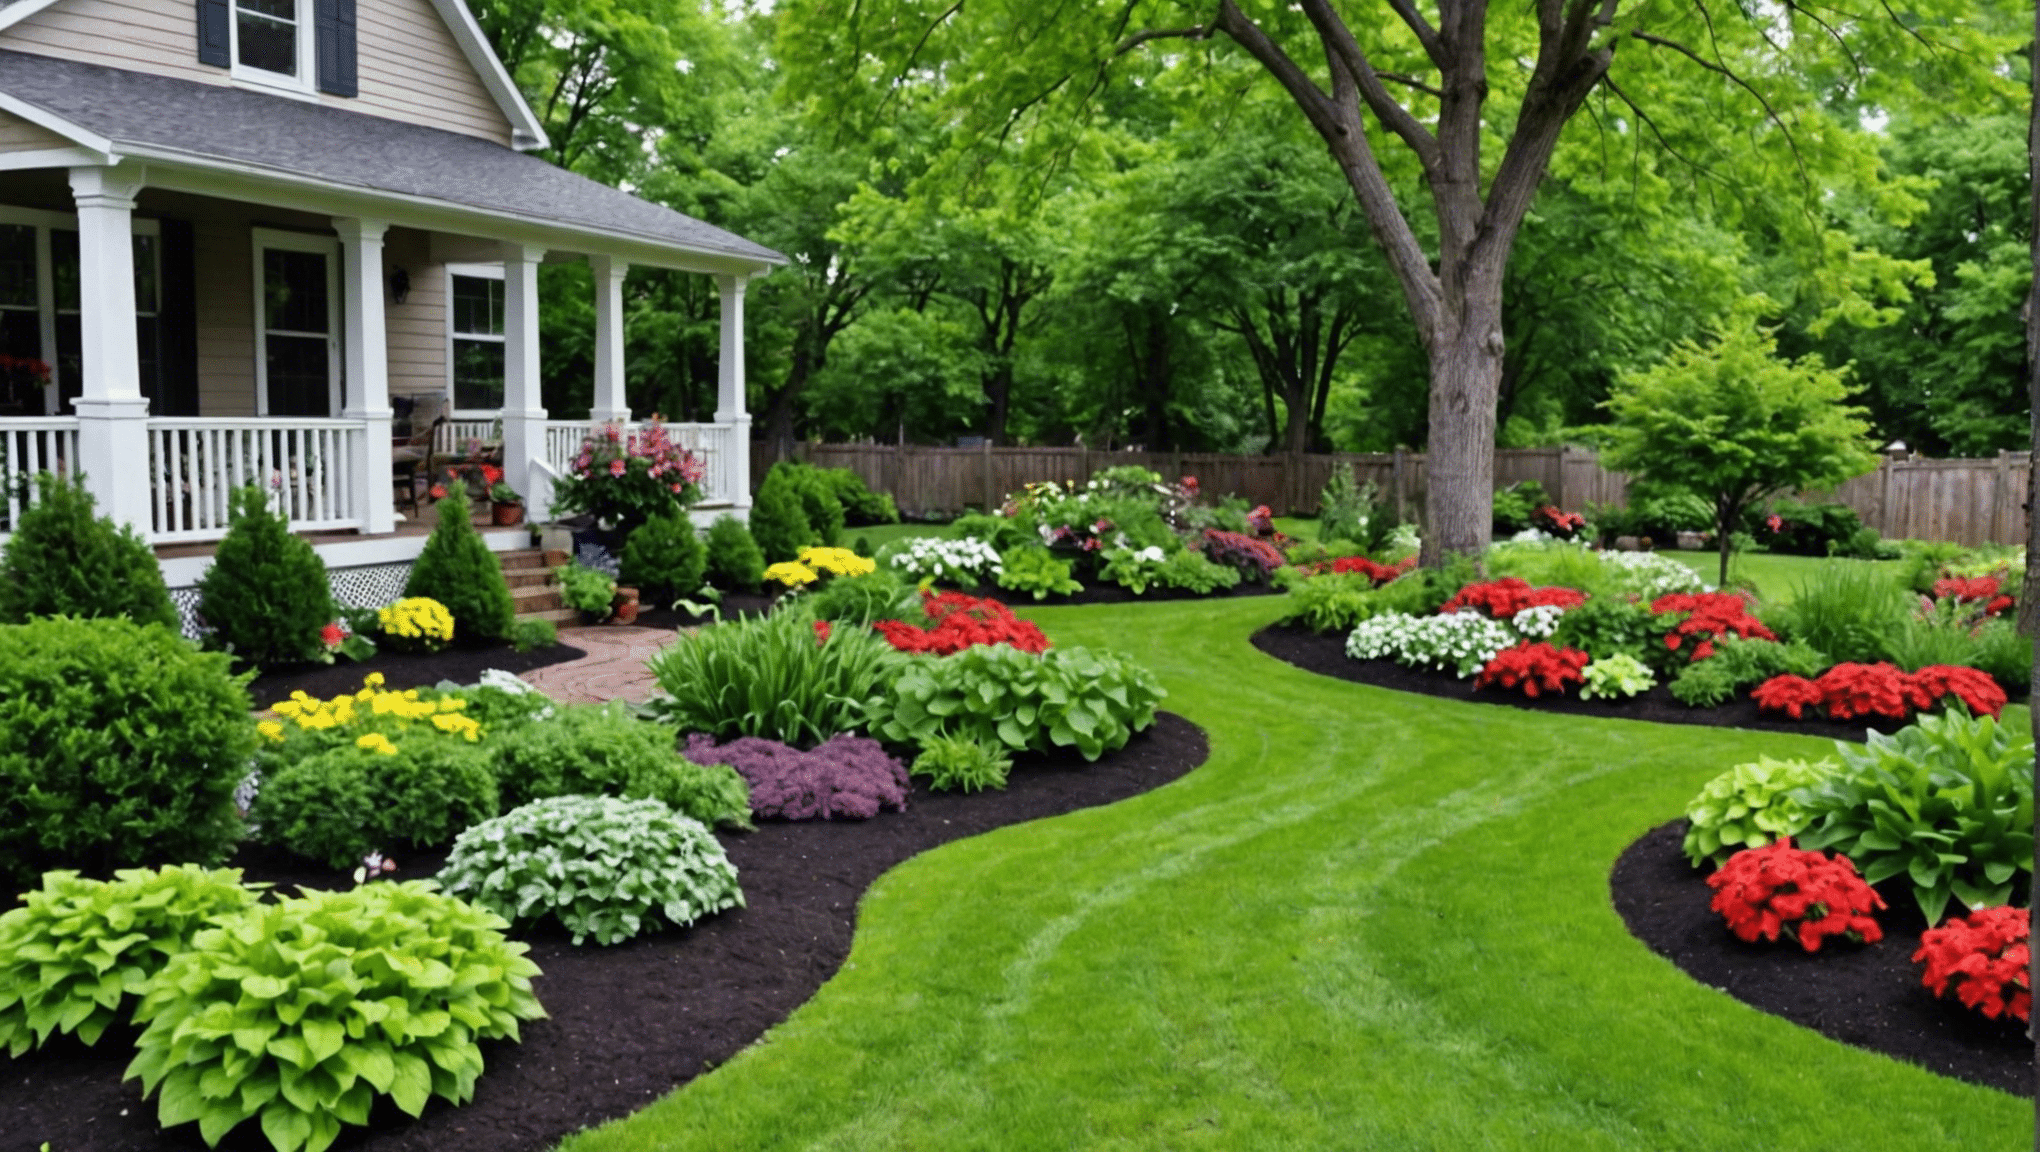 lasciati ispirare dalle idee di orto nel cortile per trasformare il tuo spazio esterno in un giardino generoso e bellissimo.